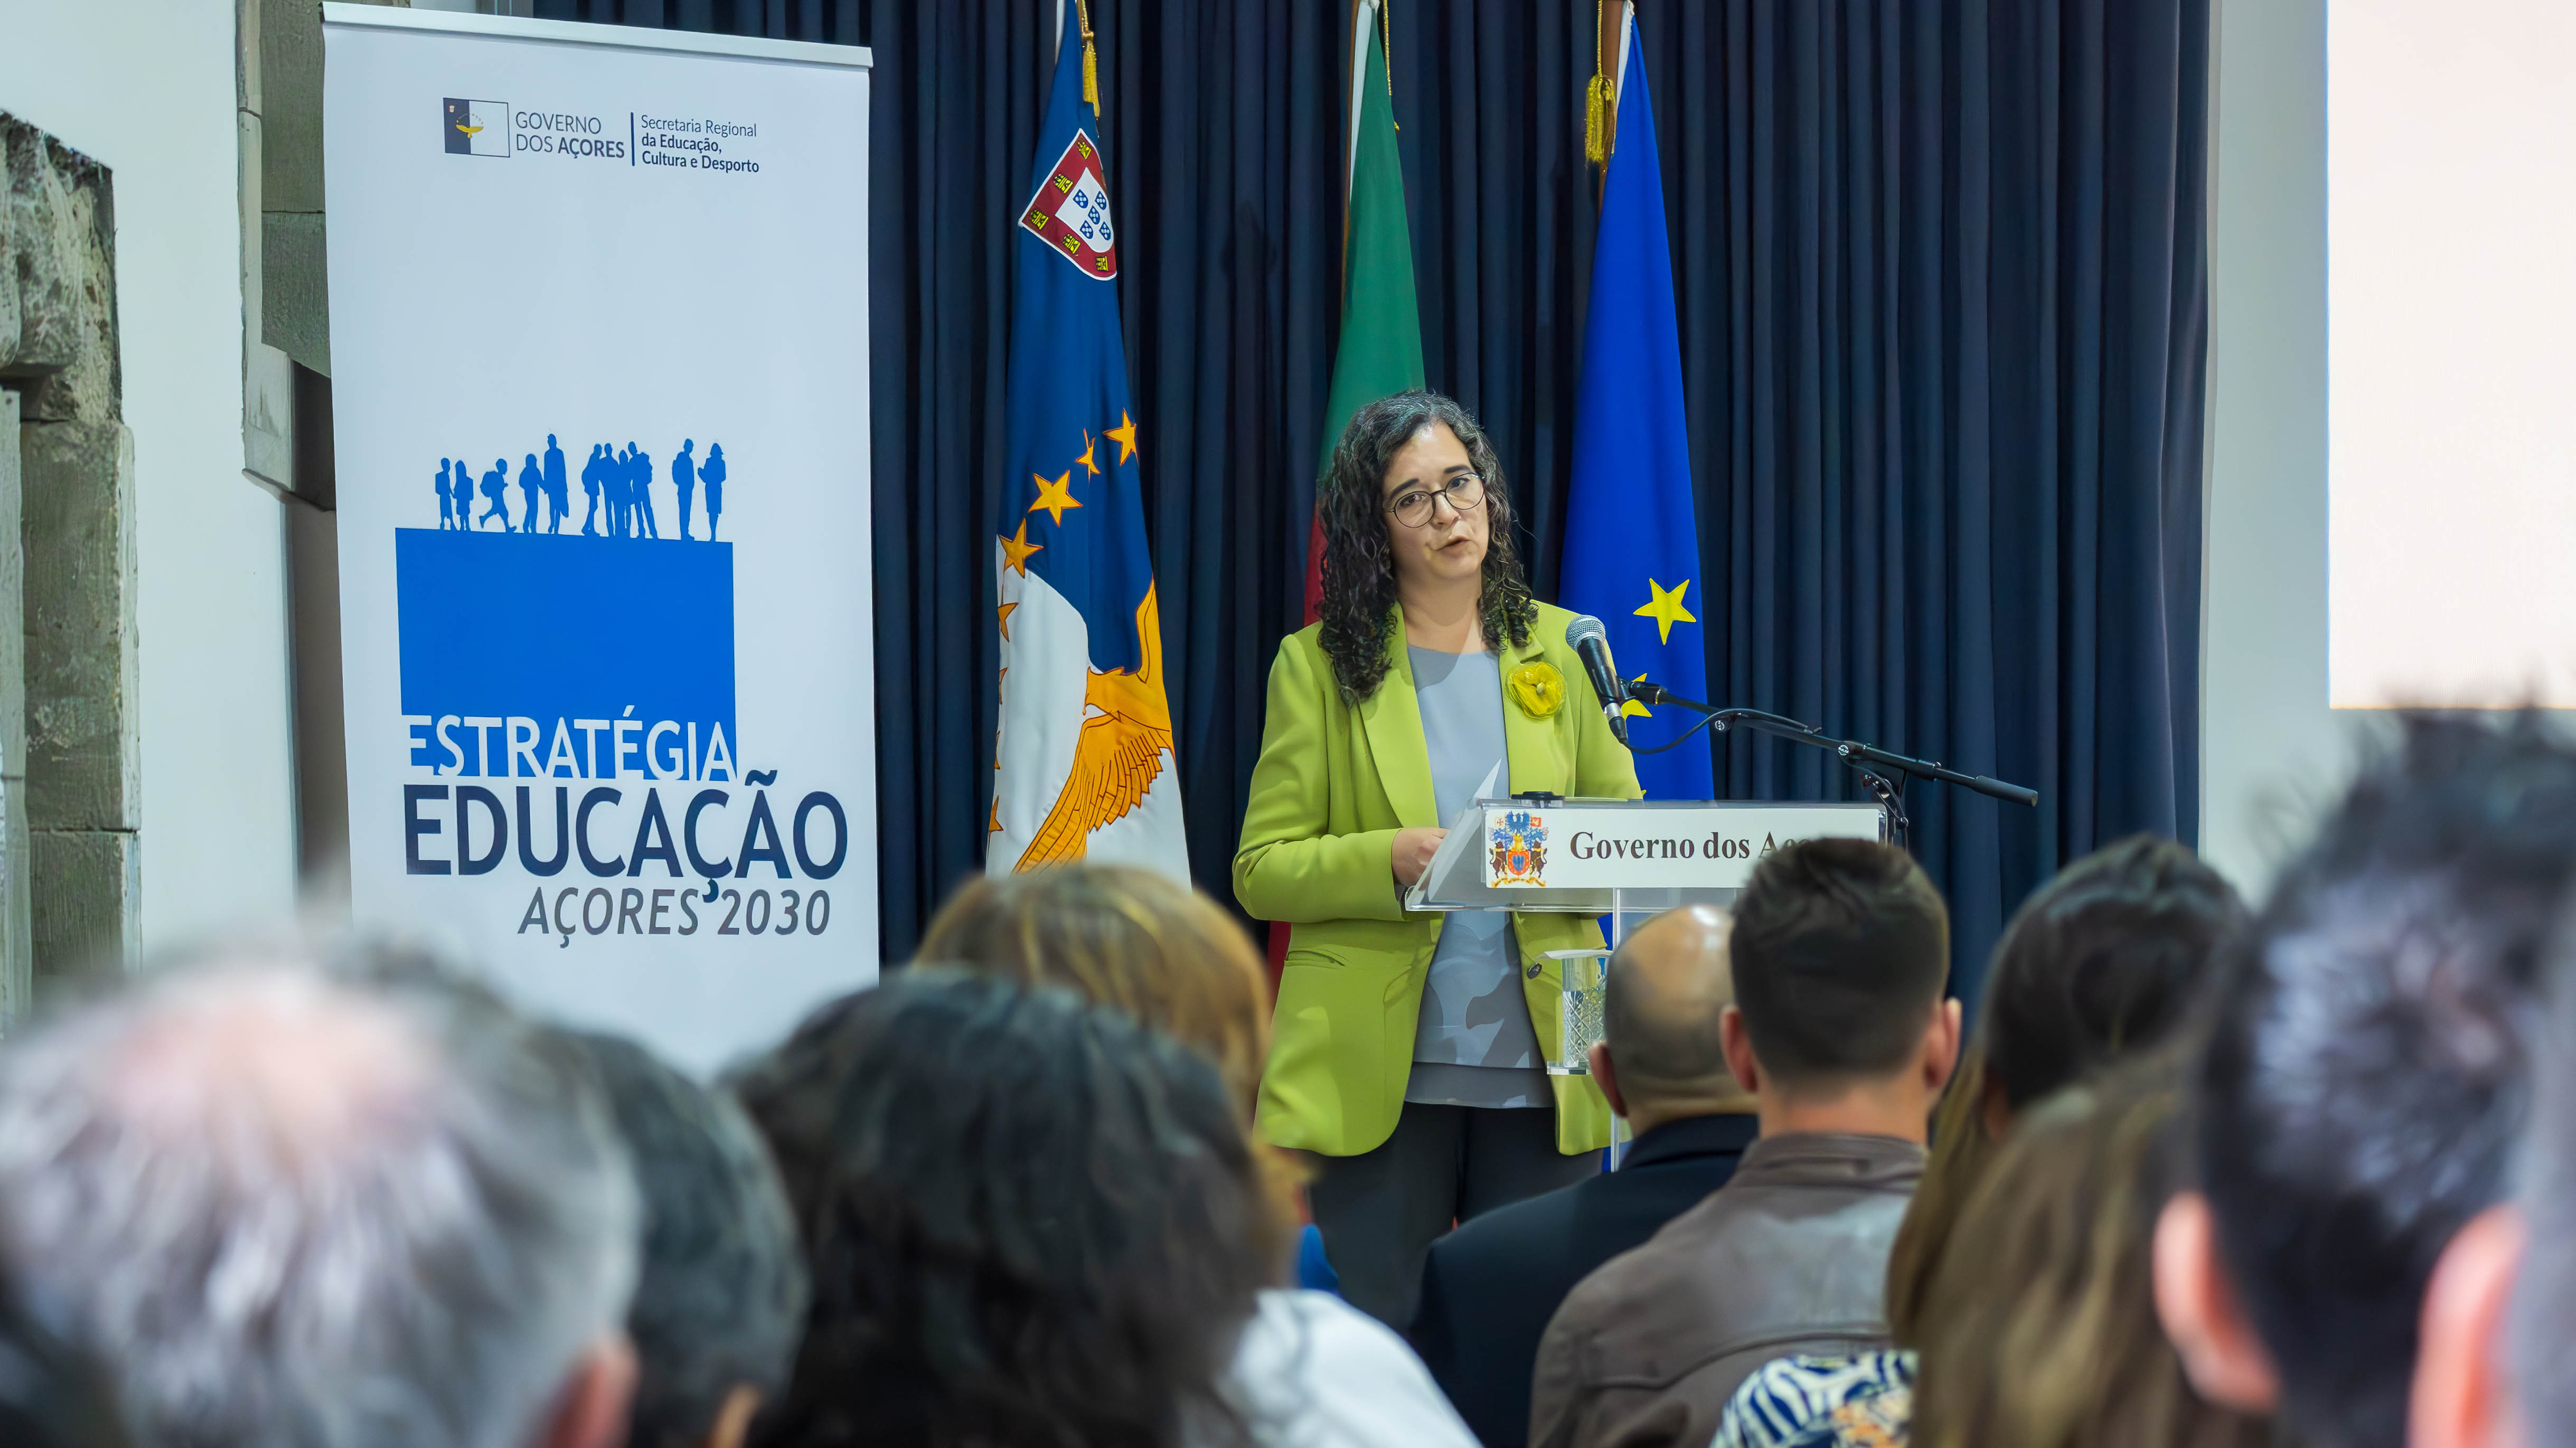 Sofia Ribeiro apresenta Estratégia da Educação para aproximar os Açores do país até 2030